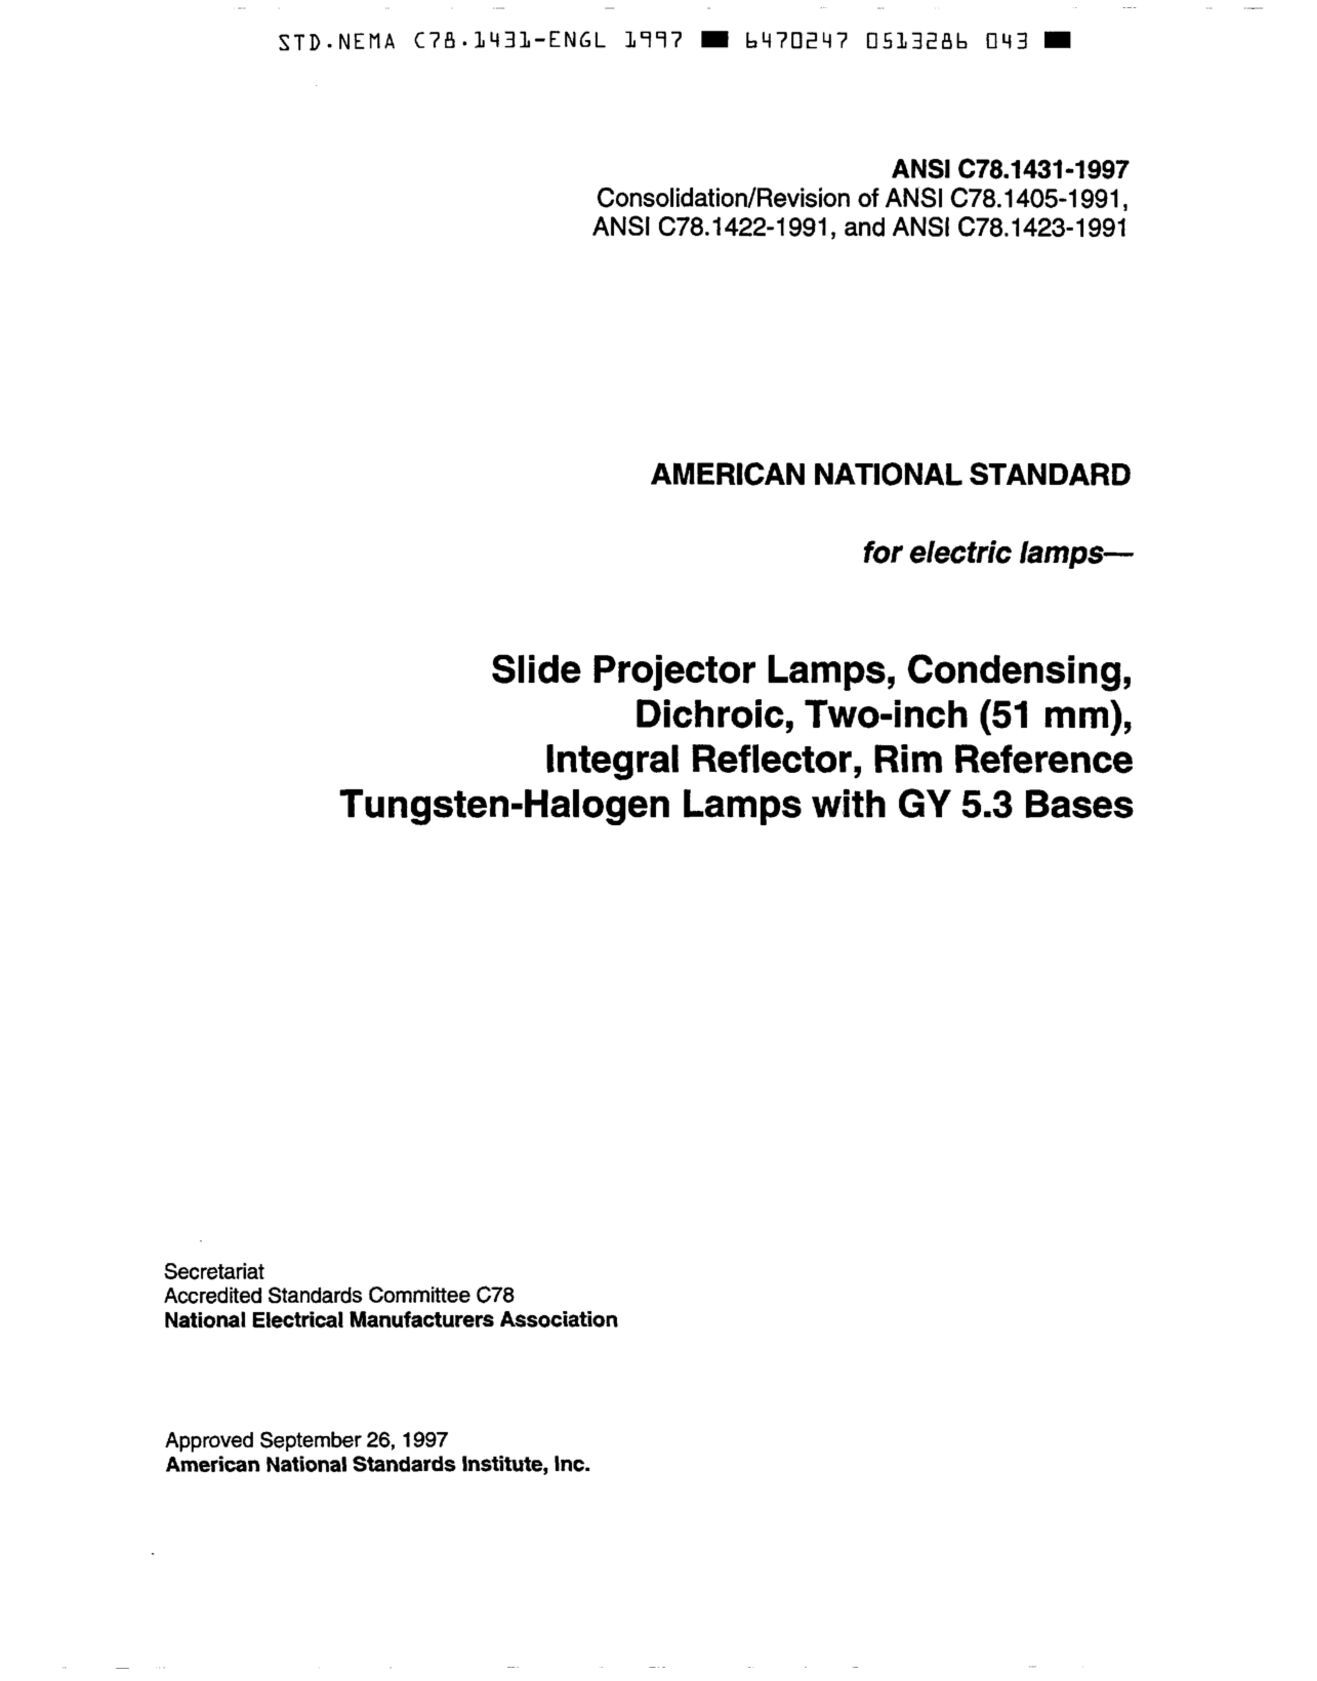 ANSI C78.1431-1997